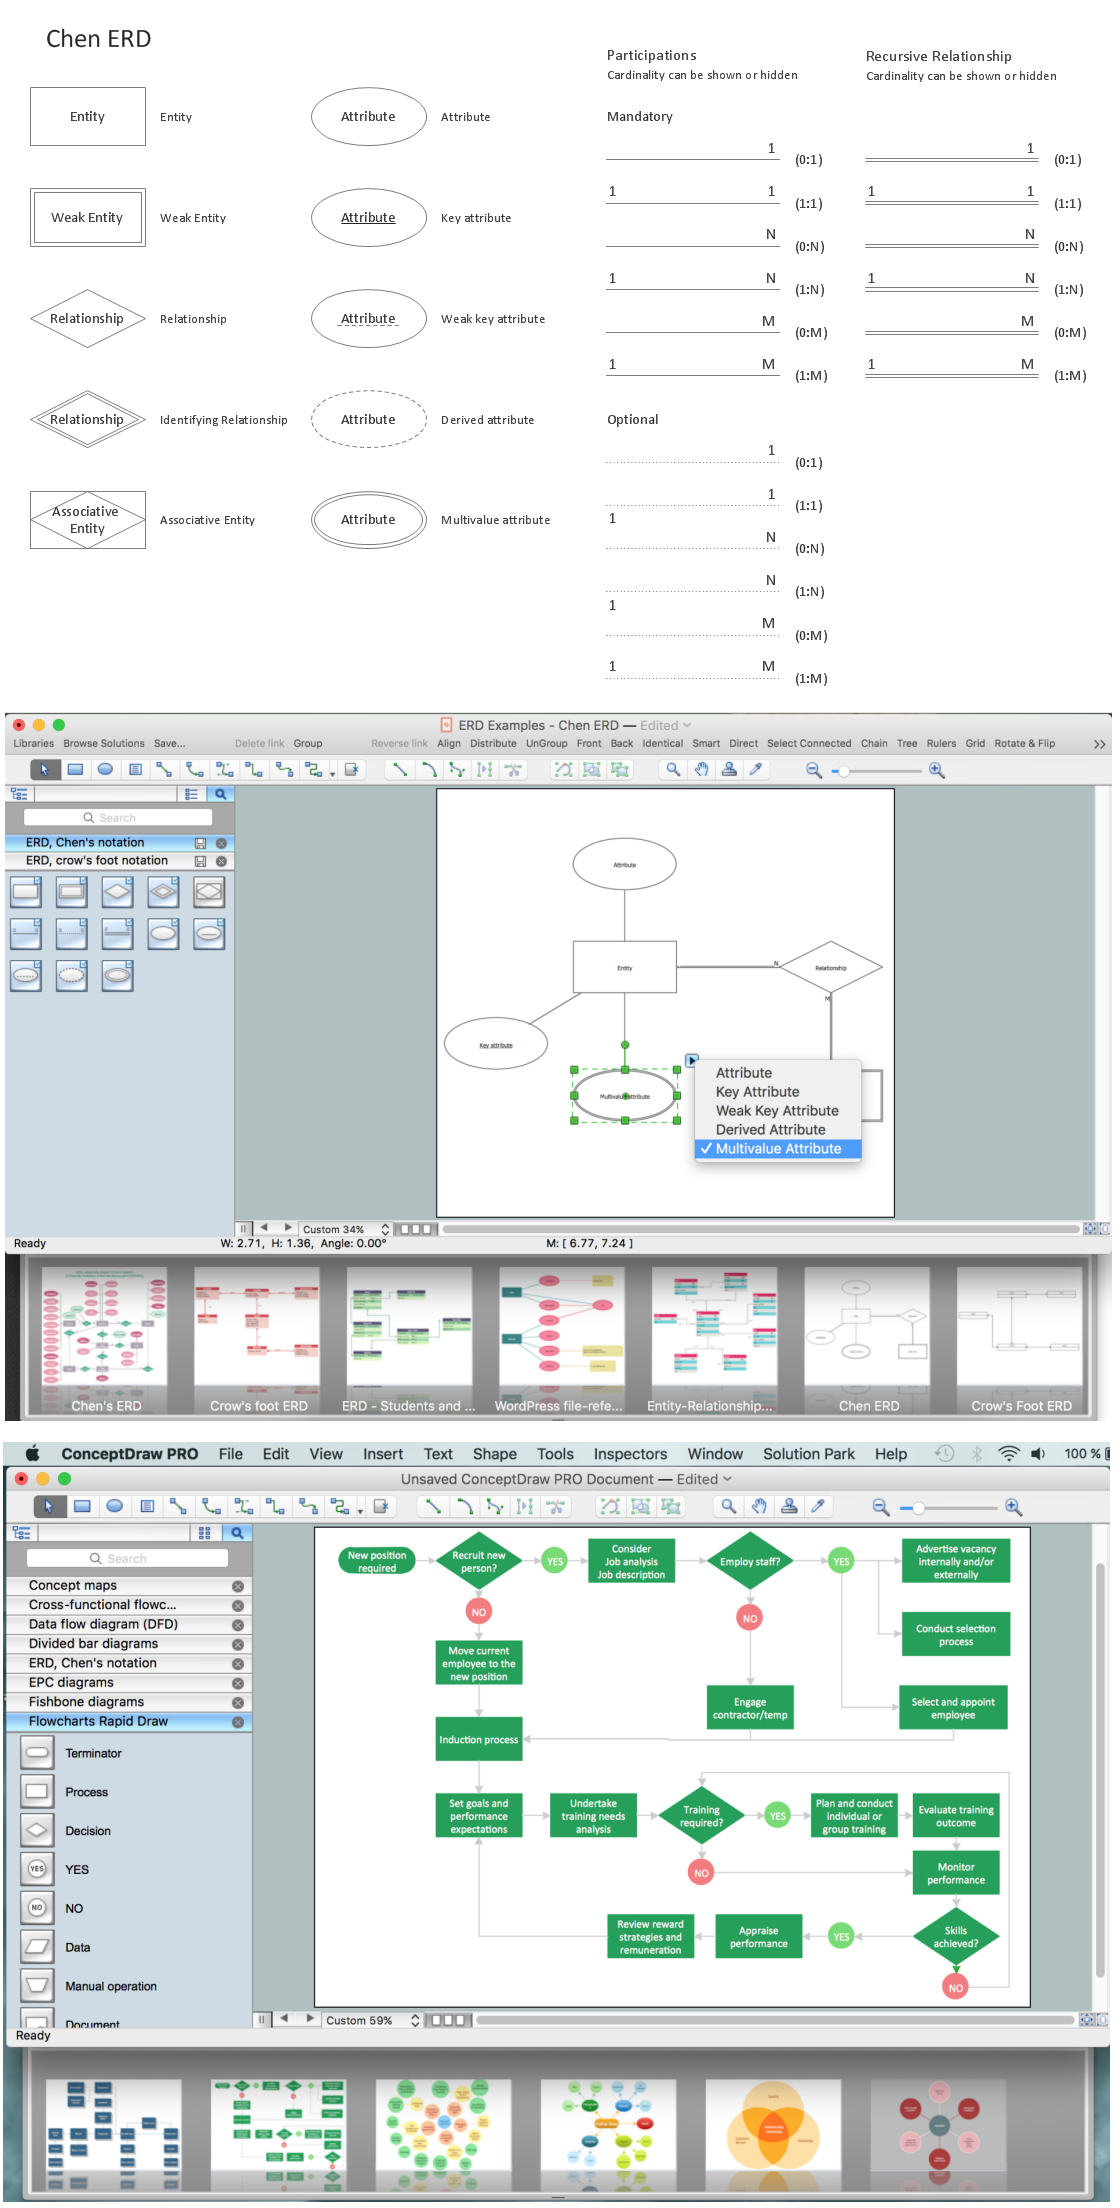 Entity Relationship Diagram - ERD - Software for Design  <br>Chen ER Diagrams *